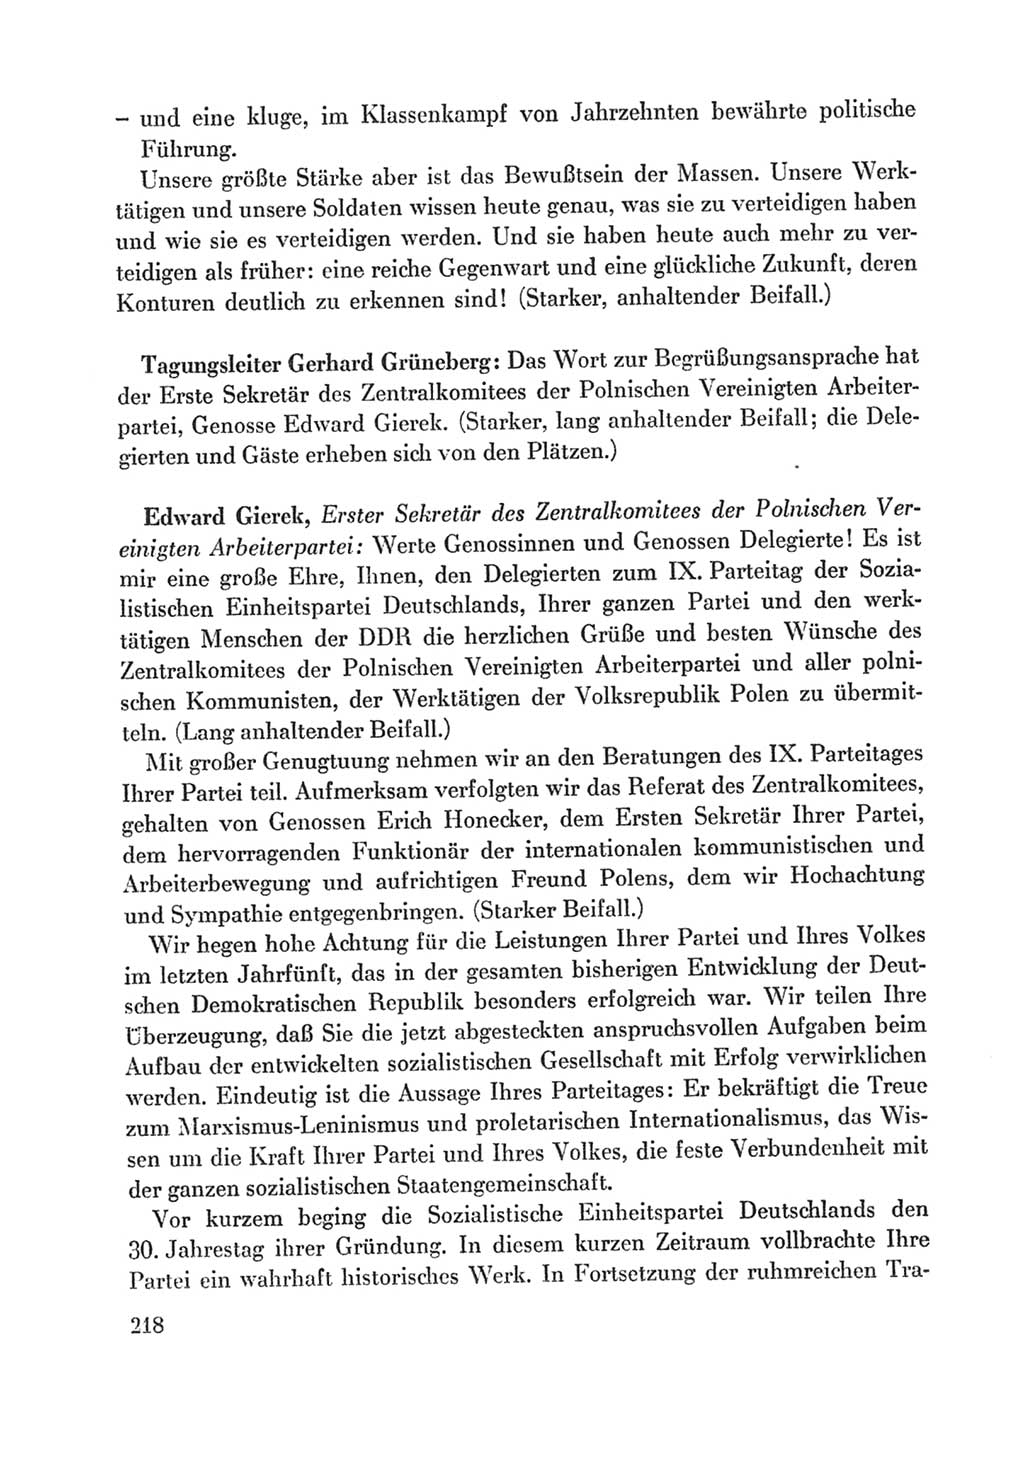 Protokoll der Verhandlungen des Ⅸ. Parteitages der Sozialistischen Einheitspartei Deutschlands (SED) [Deutsche Demokratische Republik (DDR)] 1976, Band 1, Seite 218 (Prot. Verh. Ⅸ. PT SED DDR 1976, Bd. 1, S. 218)